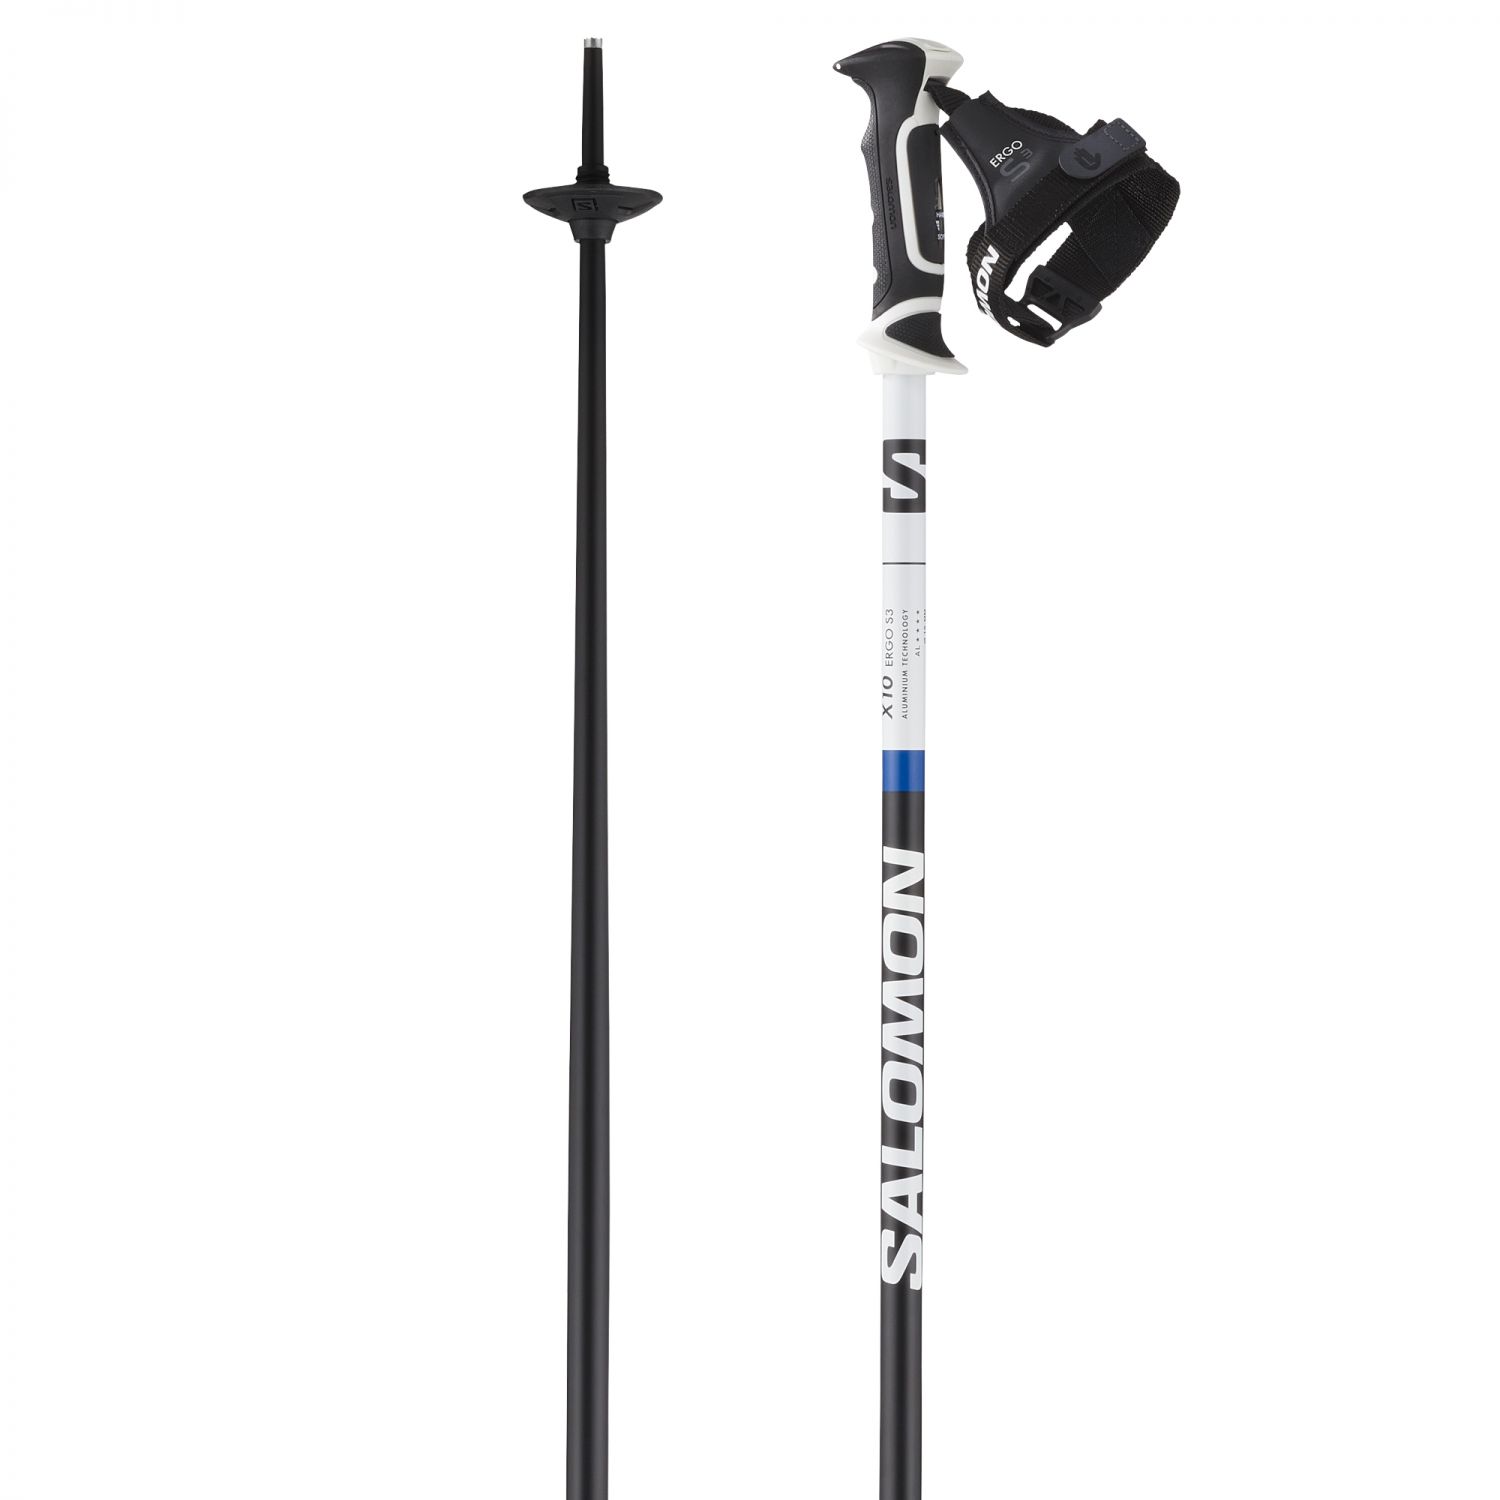 Salomon X10 Ergo S3, Skistöcke, schwarz/weiß